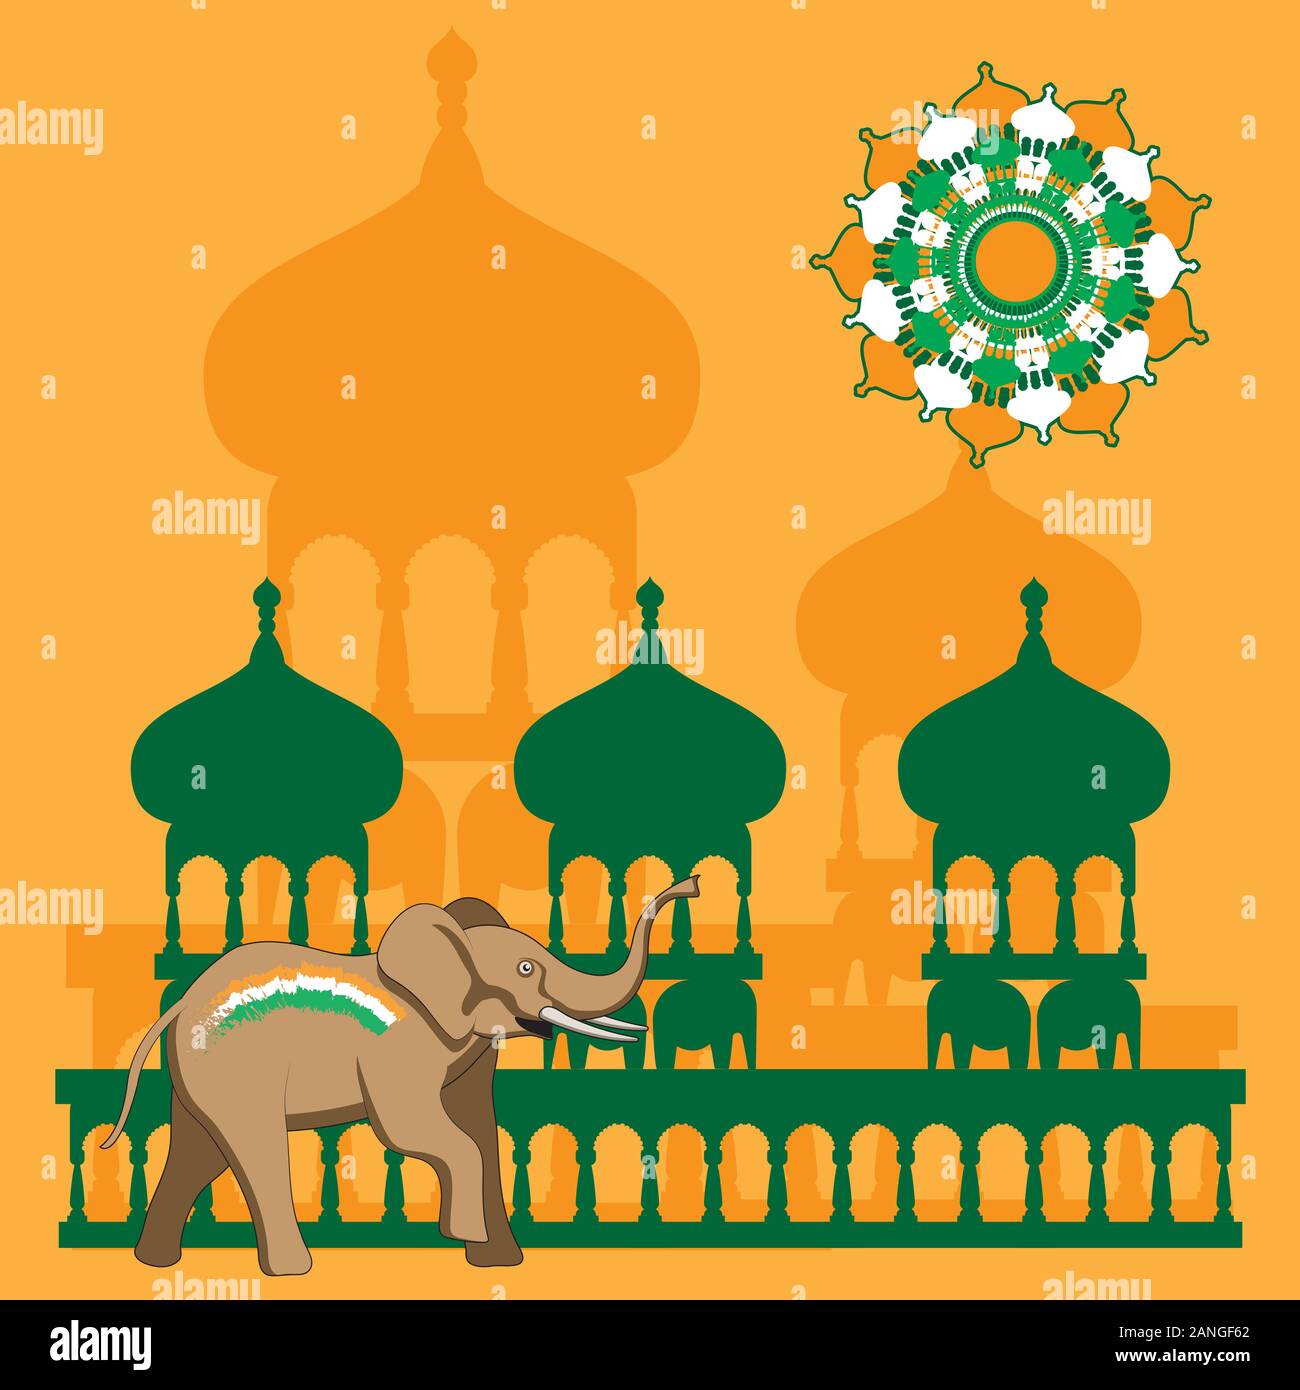 Résumé fond orange isolé avec un éléphant, les temples du soleil. Image vectorielle. Illustration de Vecteur